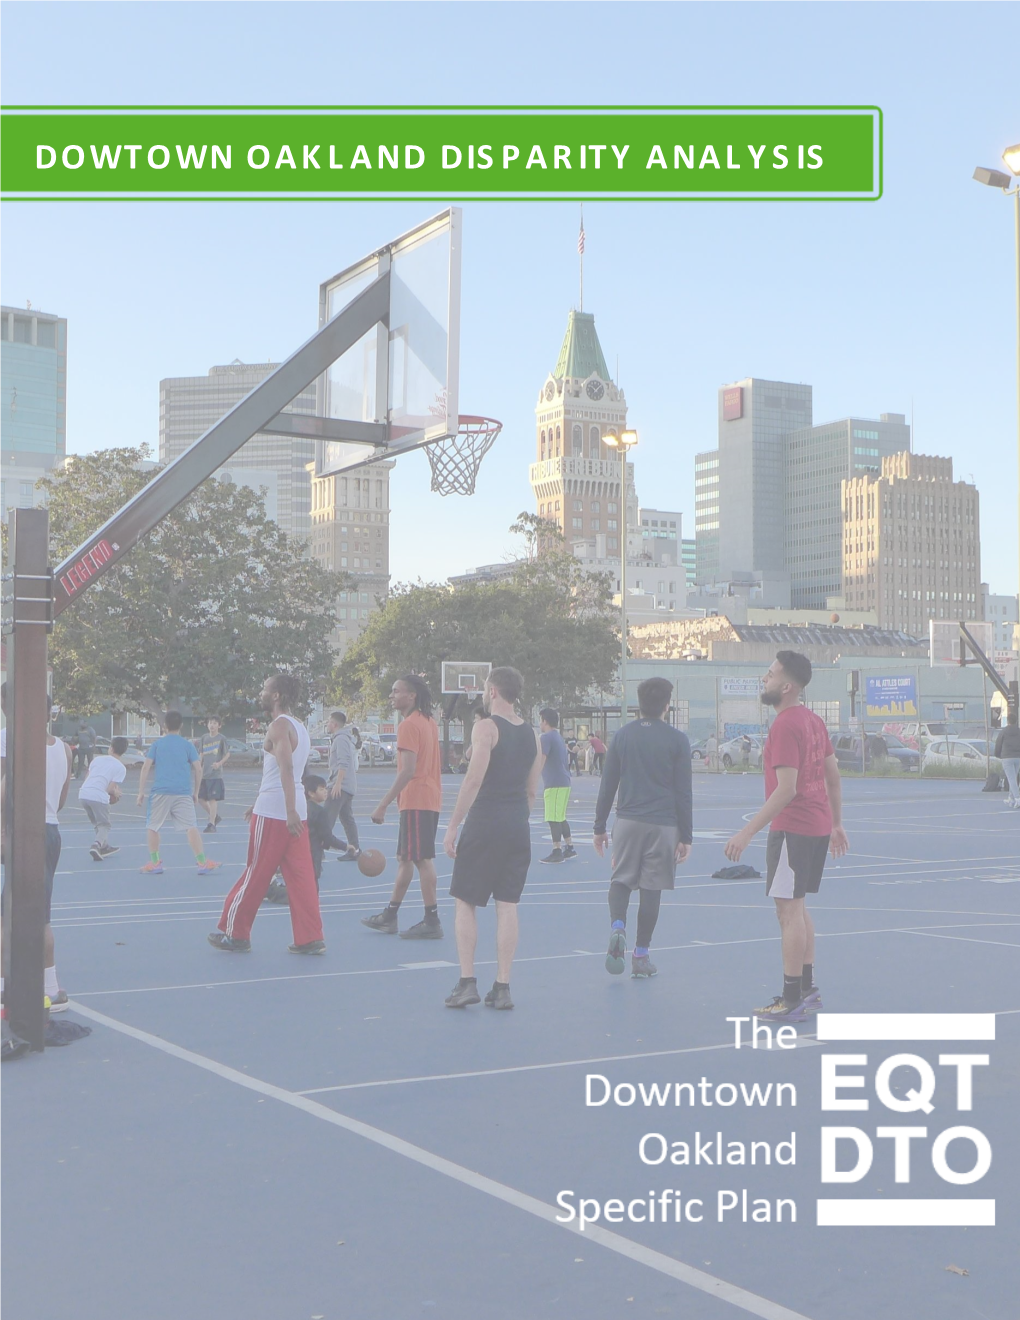 Dowtown Oakland Disparity Analysis